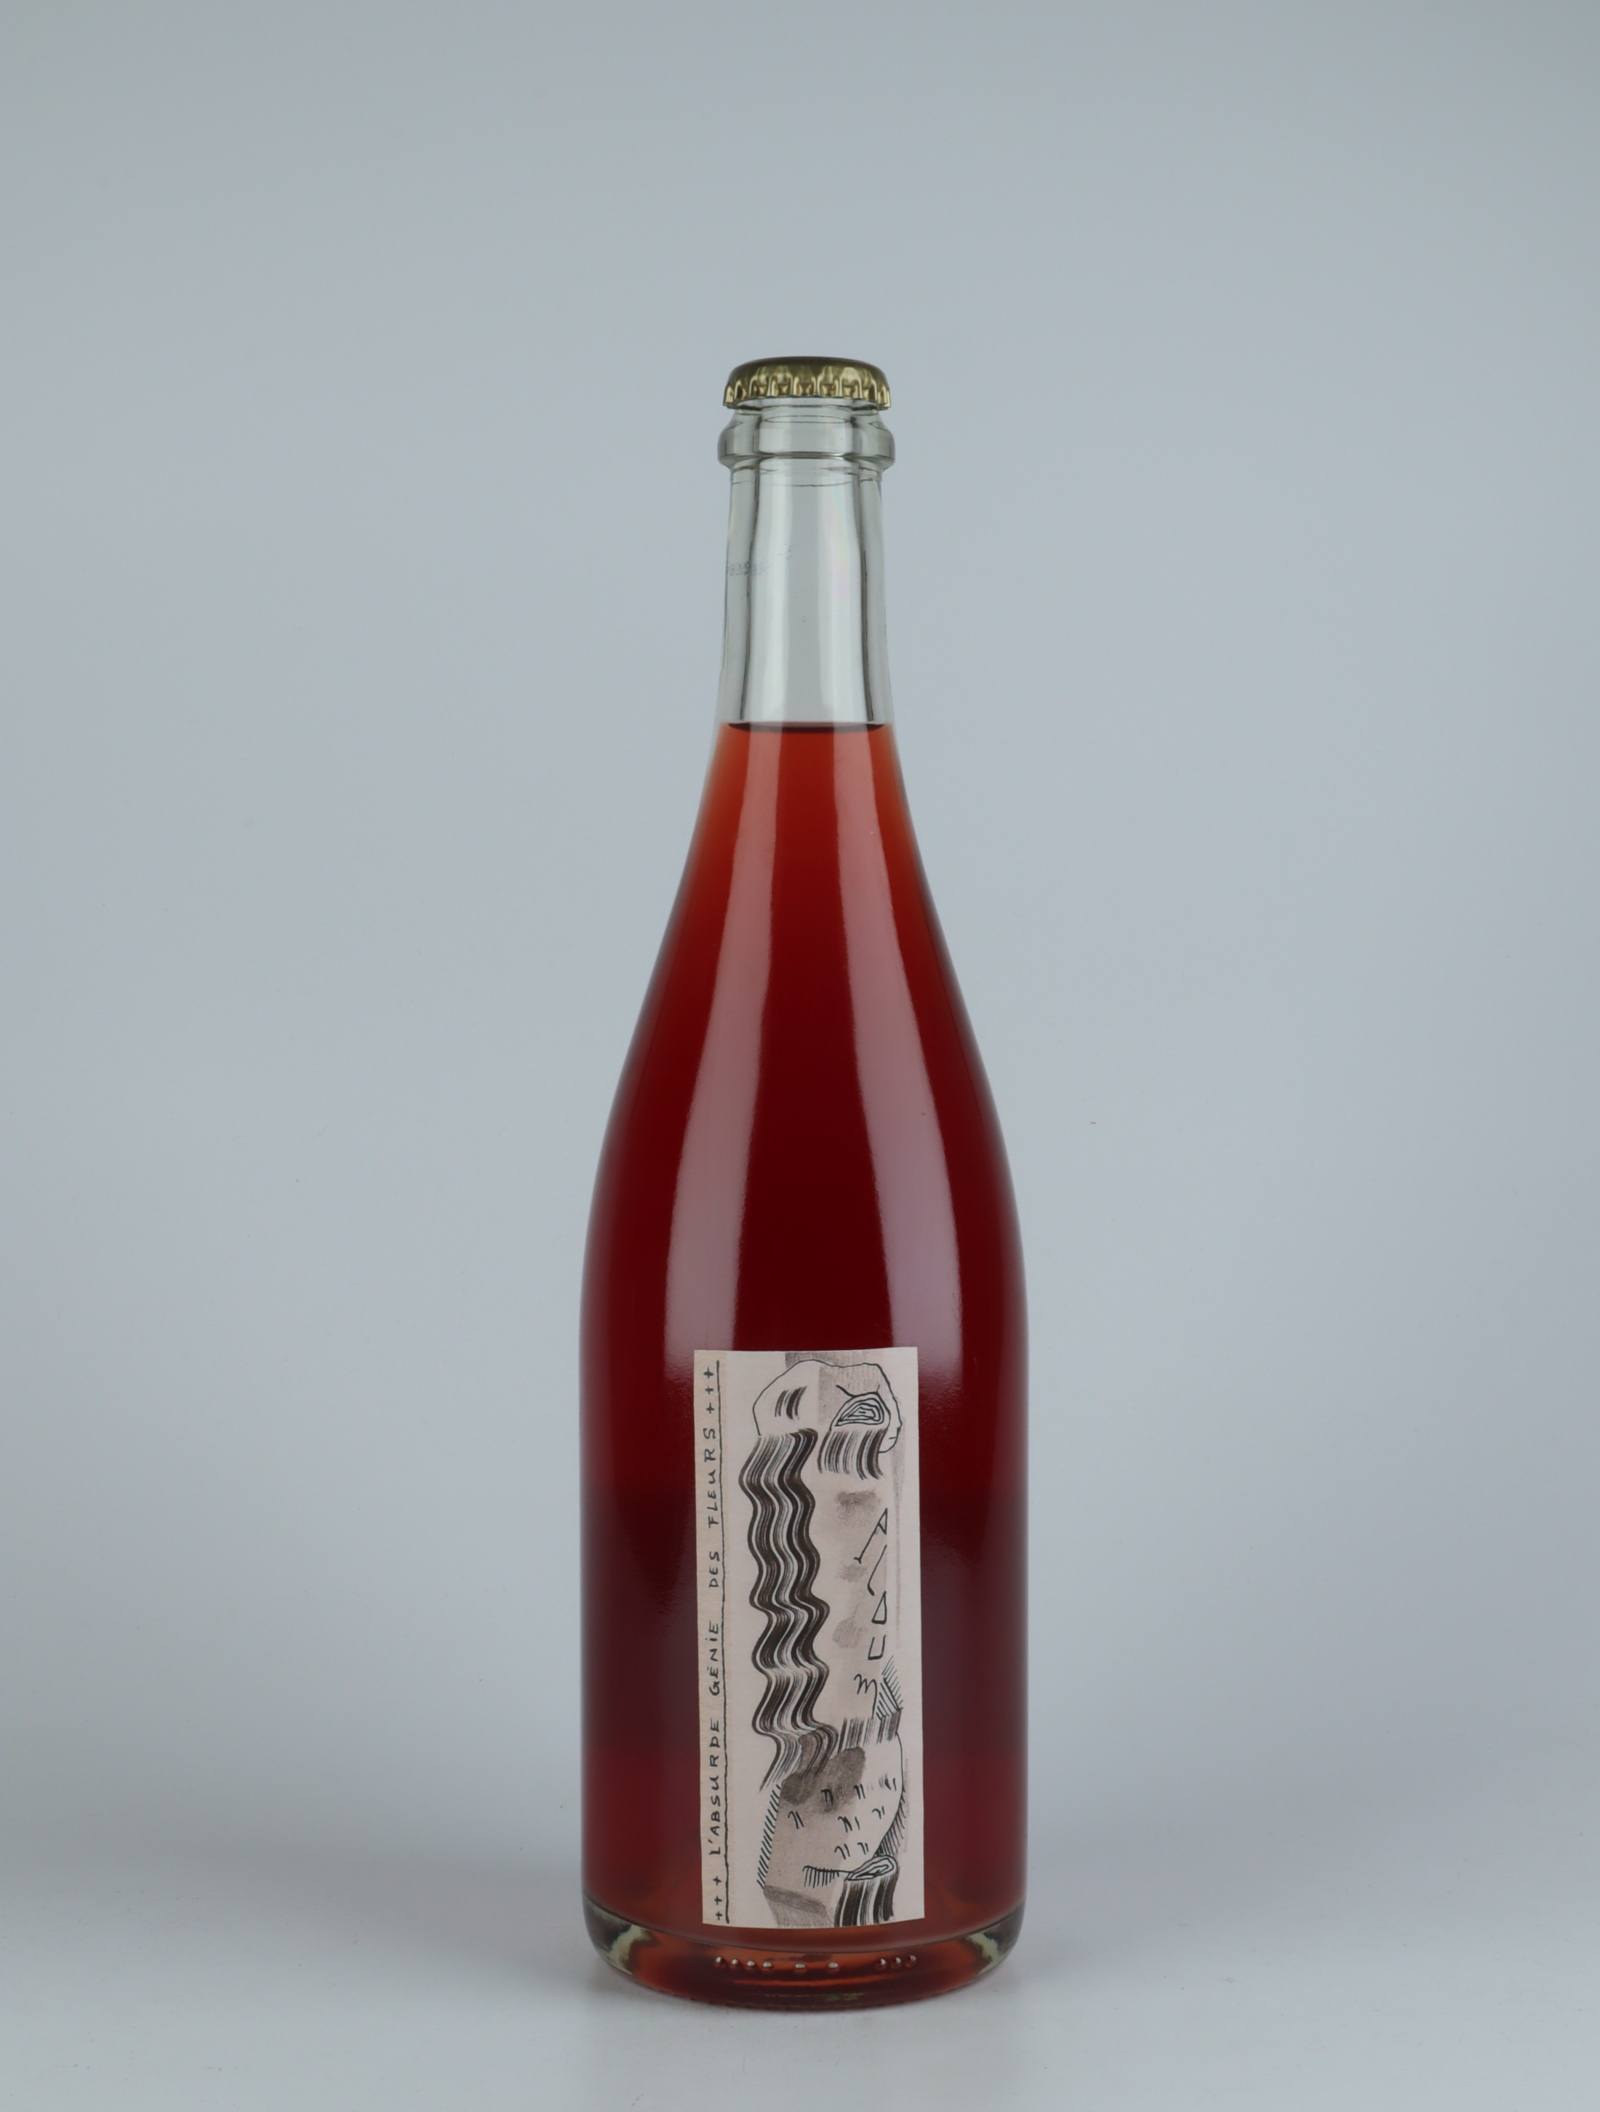 A bottle 2020 Ploum Rosé from Absurde Génie des Fleurs, Languedoc in France